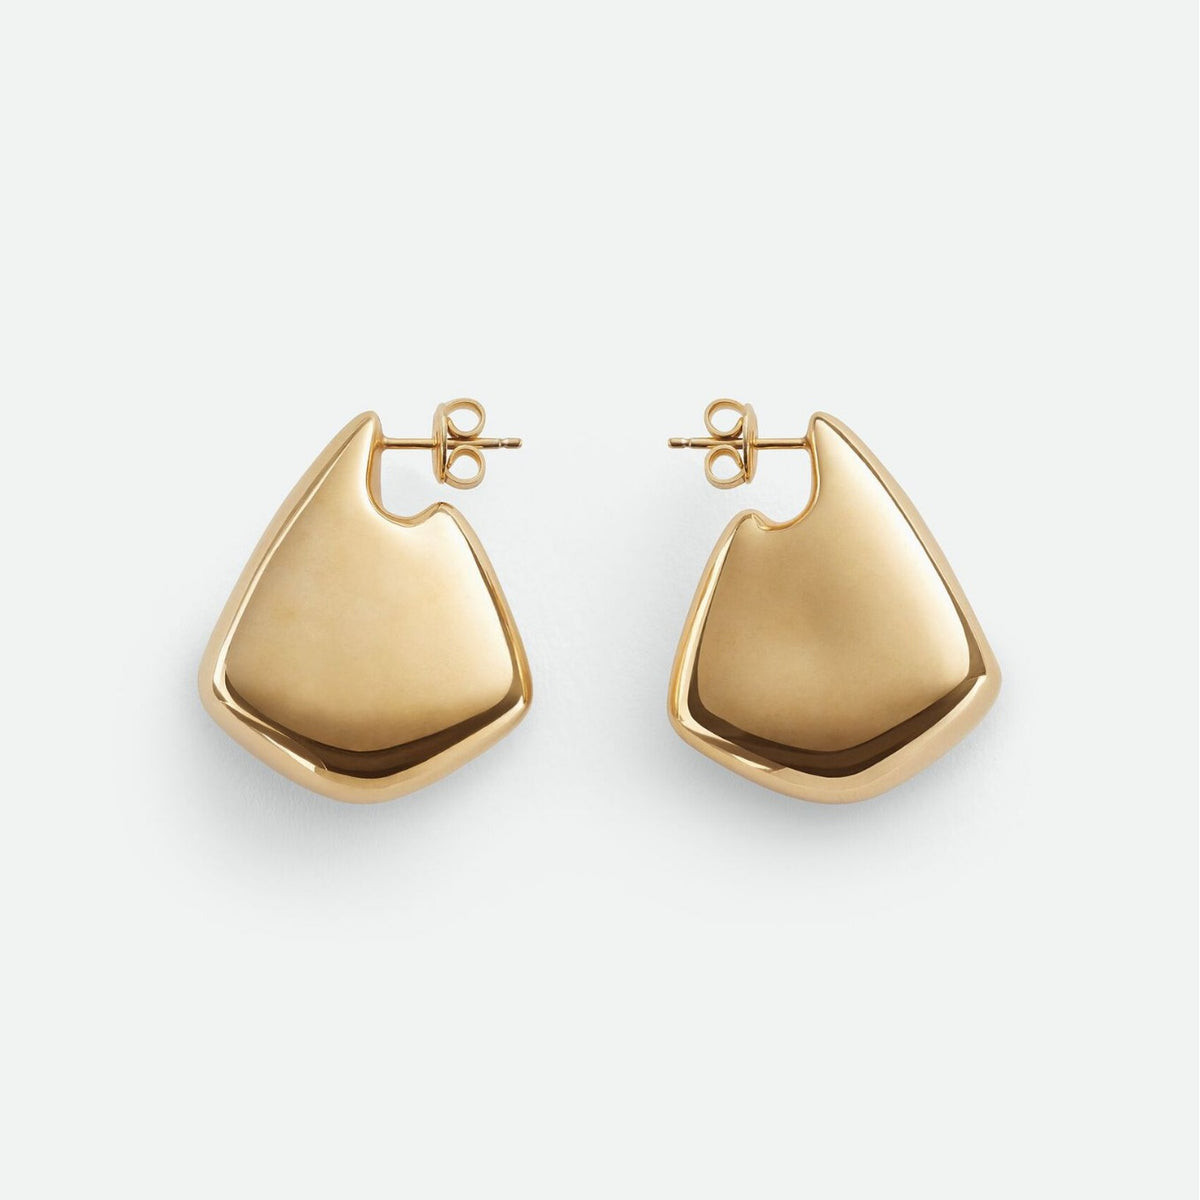 Ear Stud - Electroplated Copper Earrings